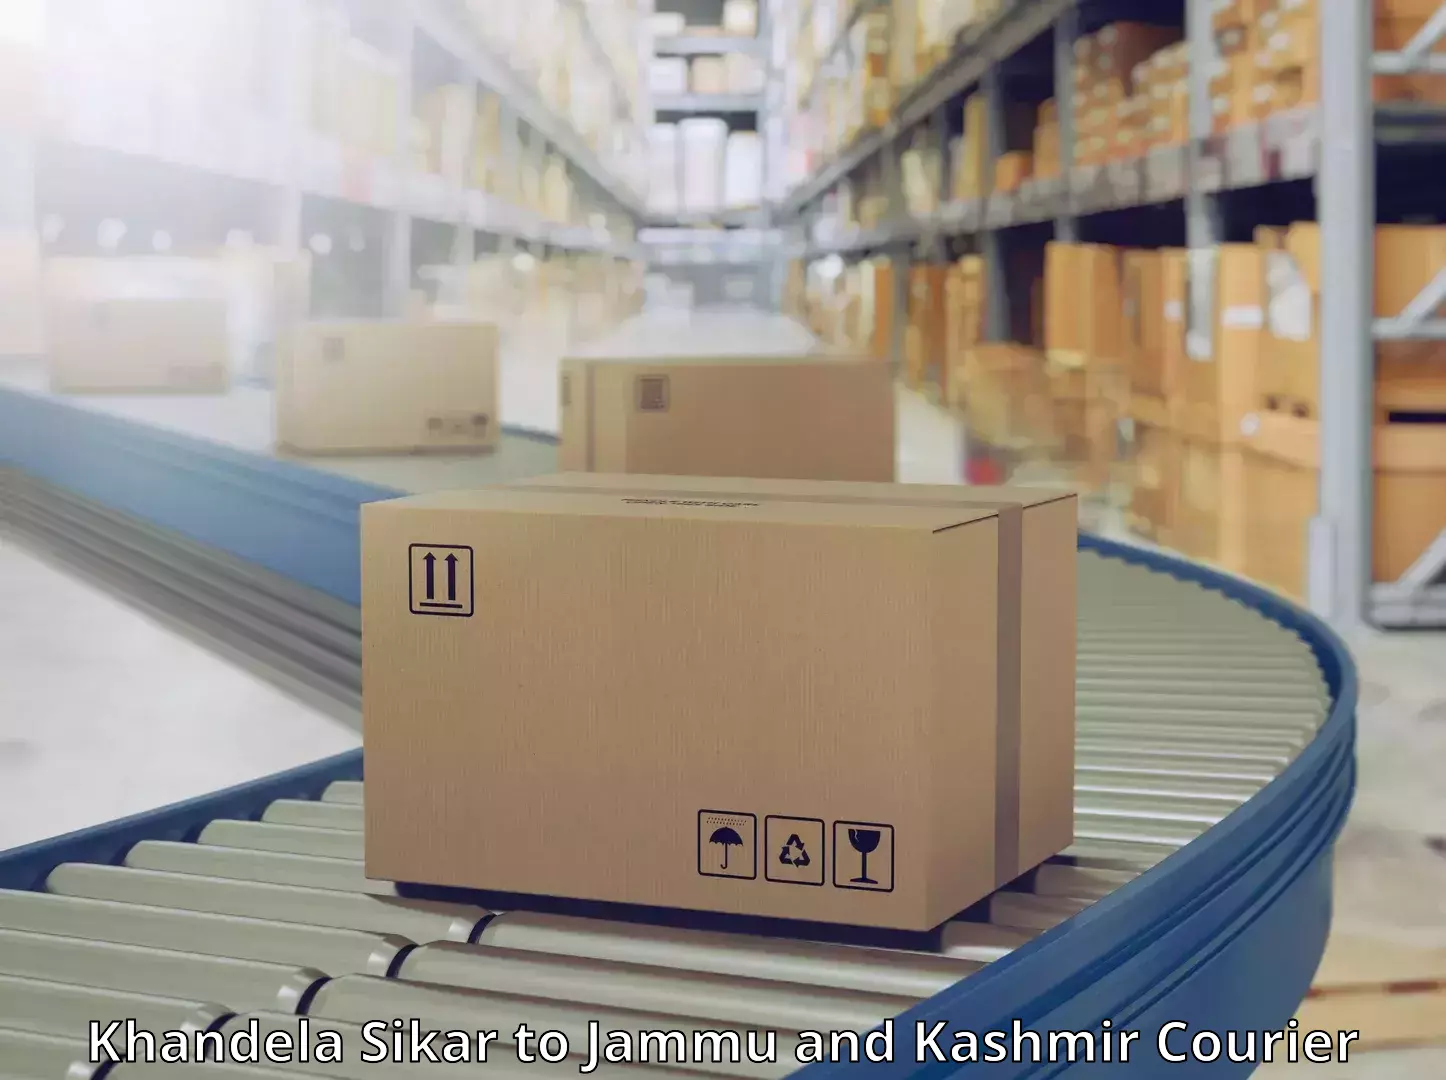 State-of-the-art courier technology Khandela Sikar to Doda